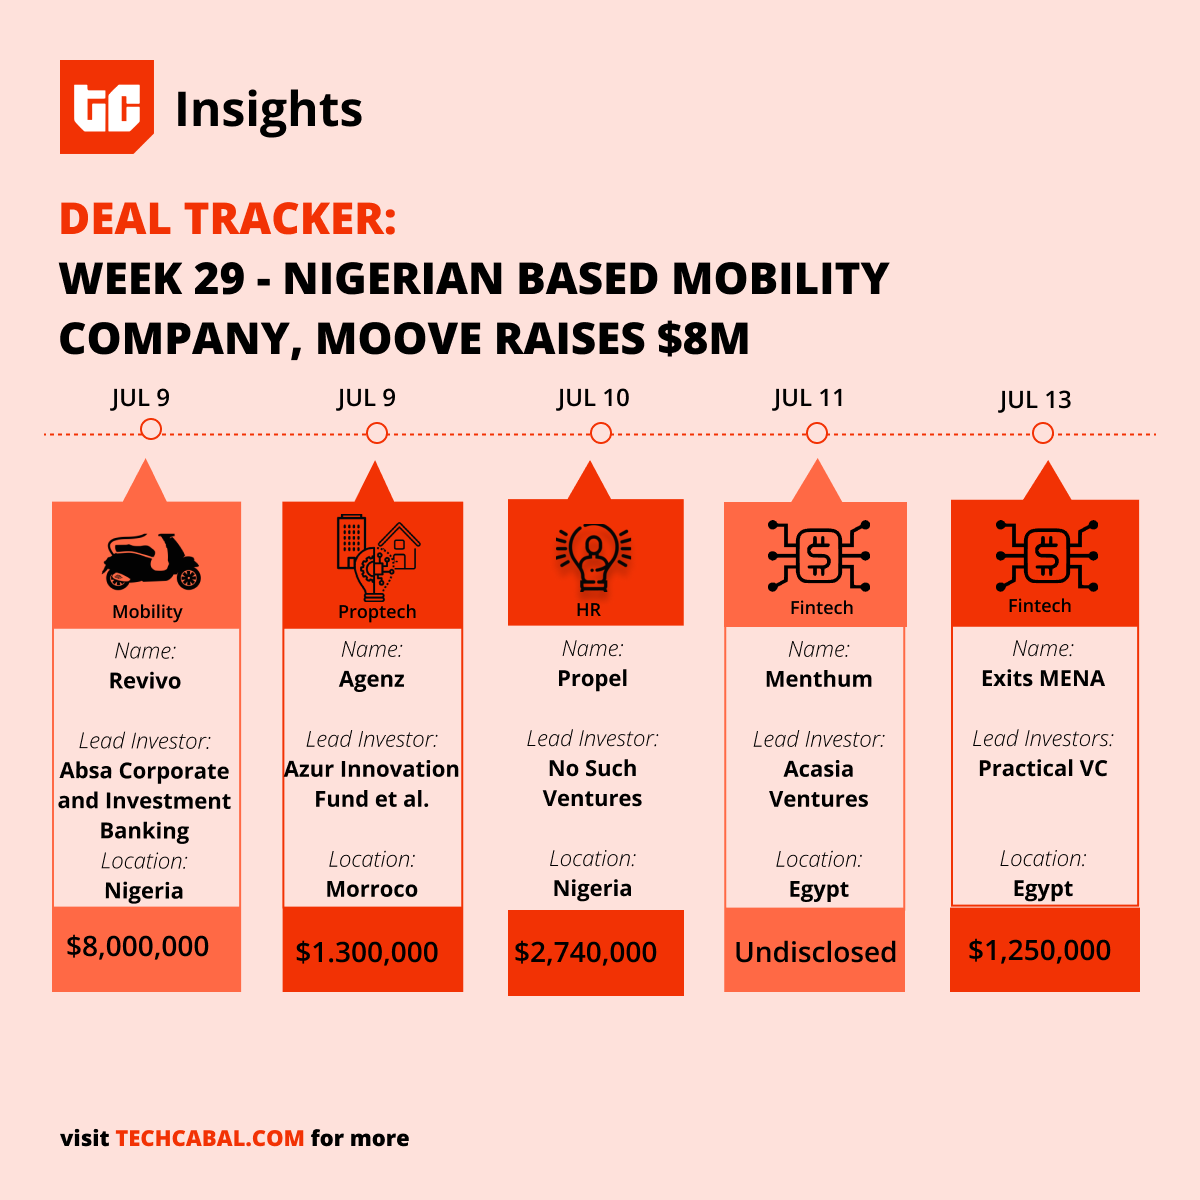 Deal Tracker Chart